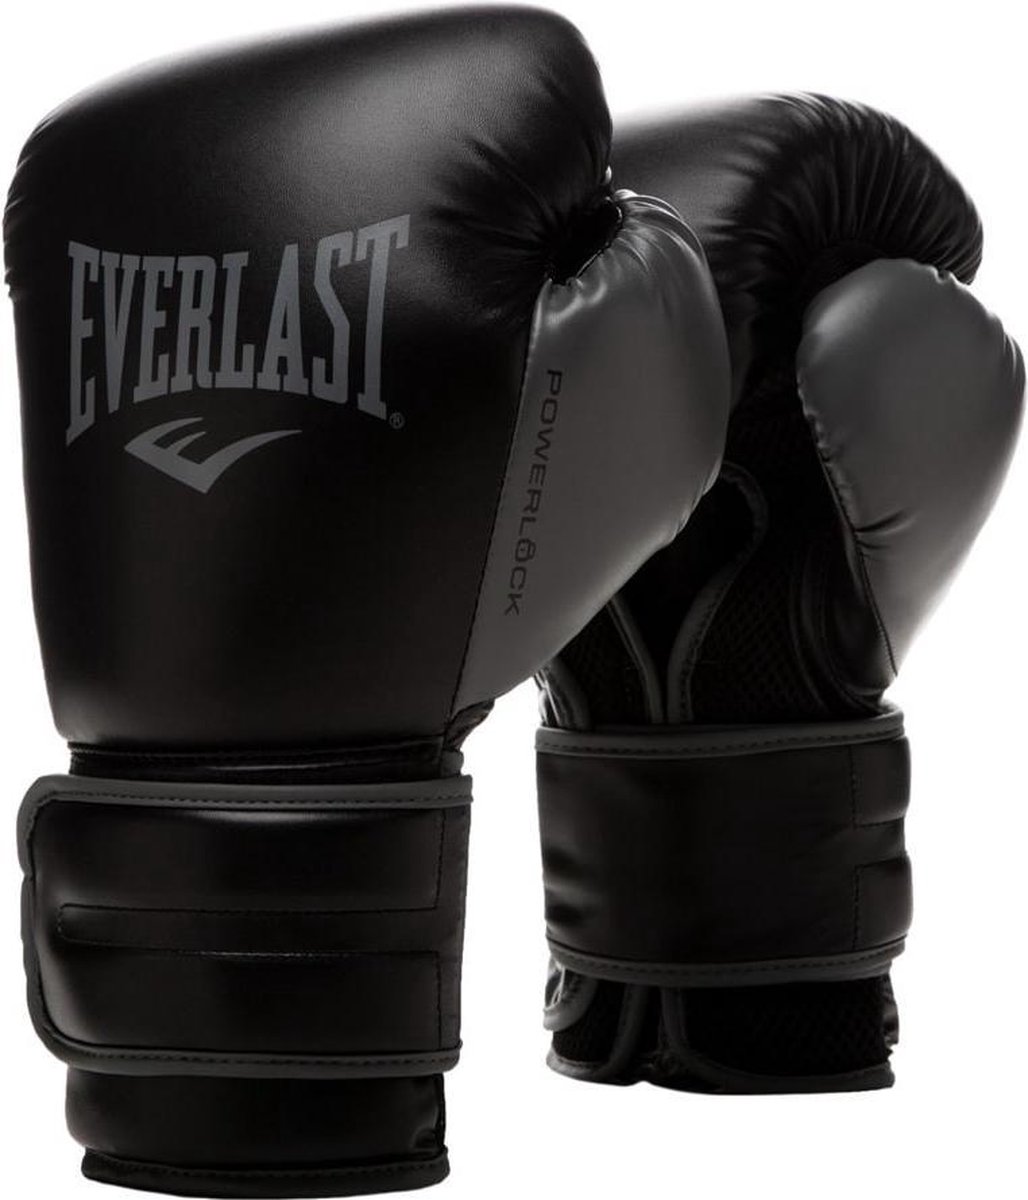 Everlast Powerlock 2 - Bokshandschoenen - 12 oz - Zwart